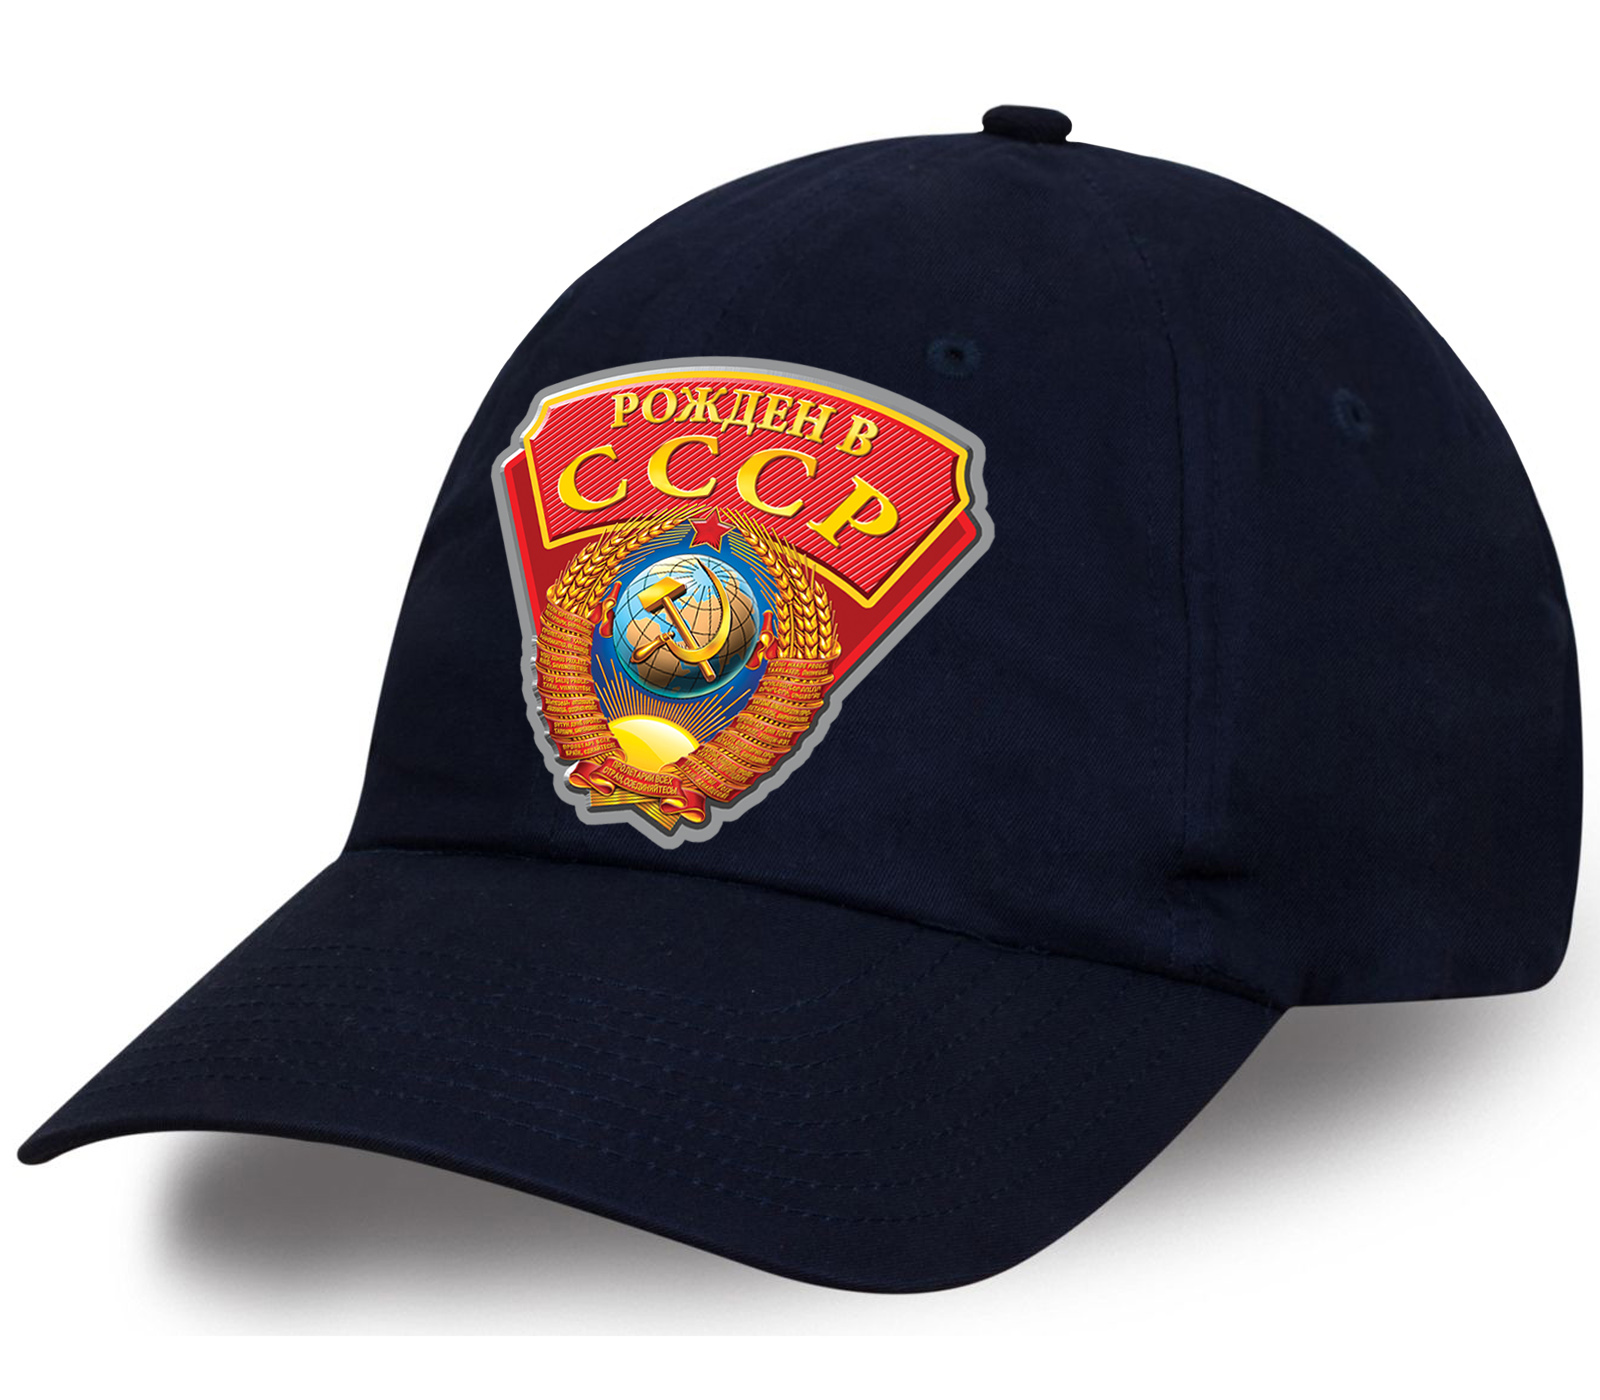 Летняя темно-синяя бейсболка Рожден в СССР  - ИДЕАЛЬНЫЙ головной убор! Цена горячее не придумаешь, бери несколько!